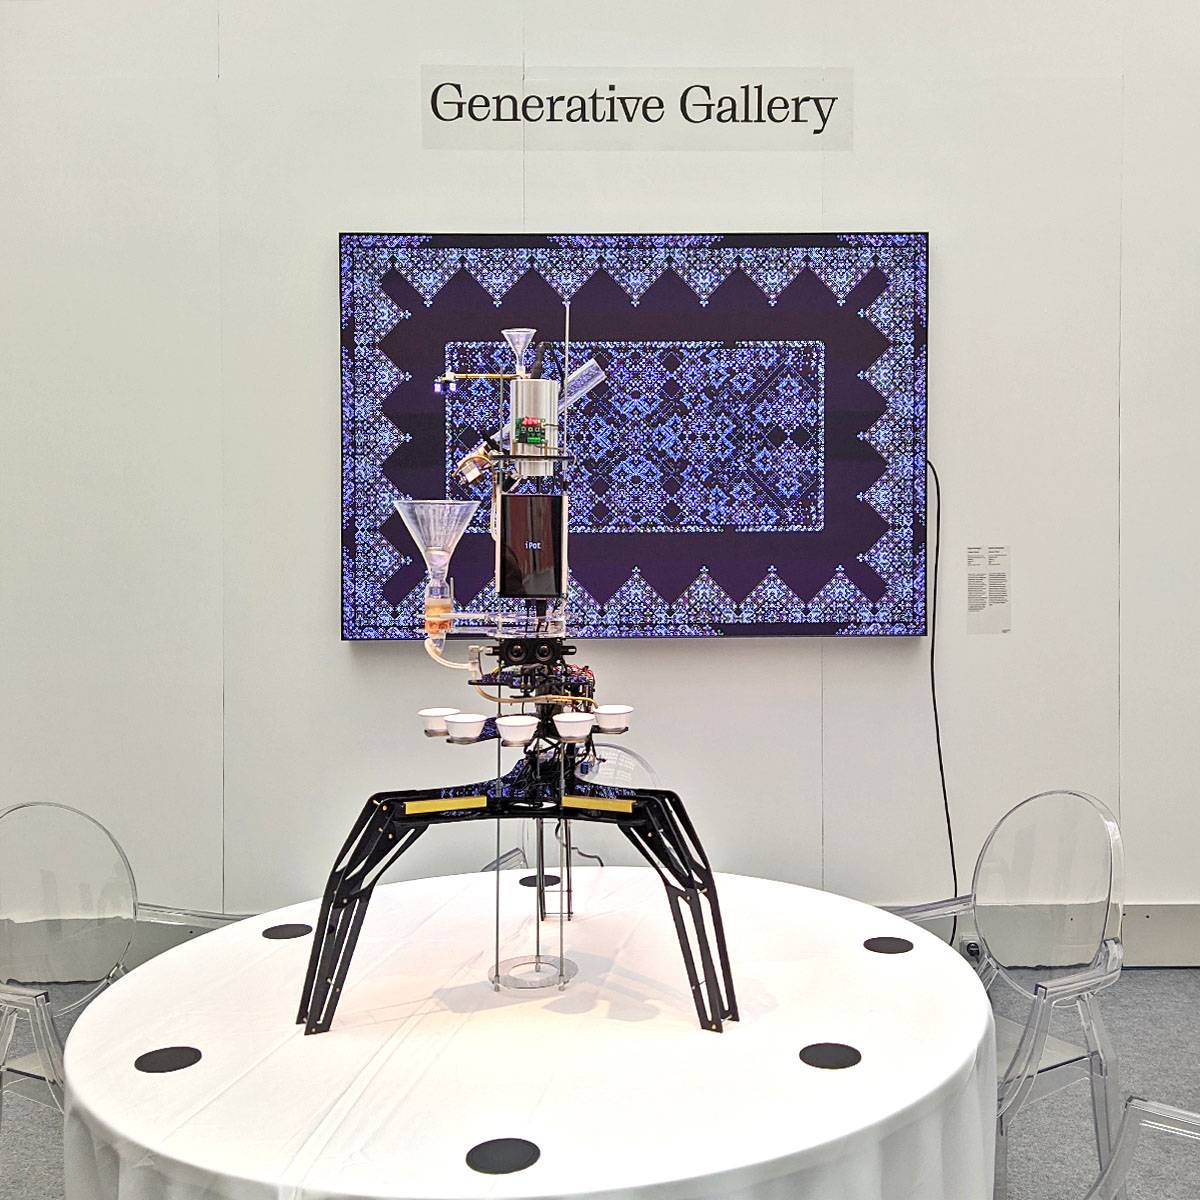 Generative Gallery